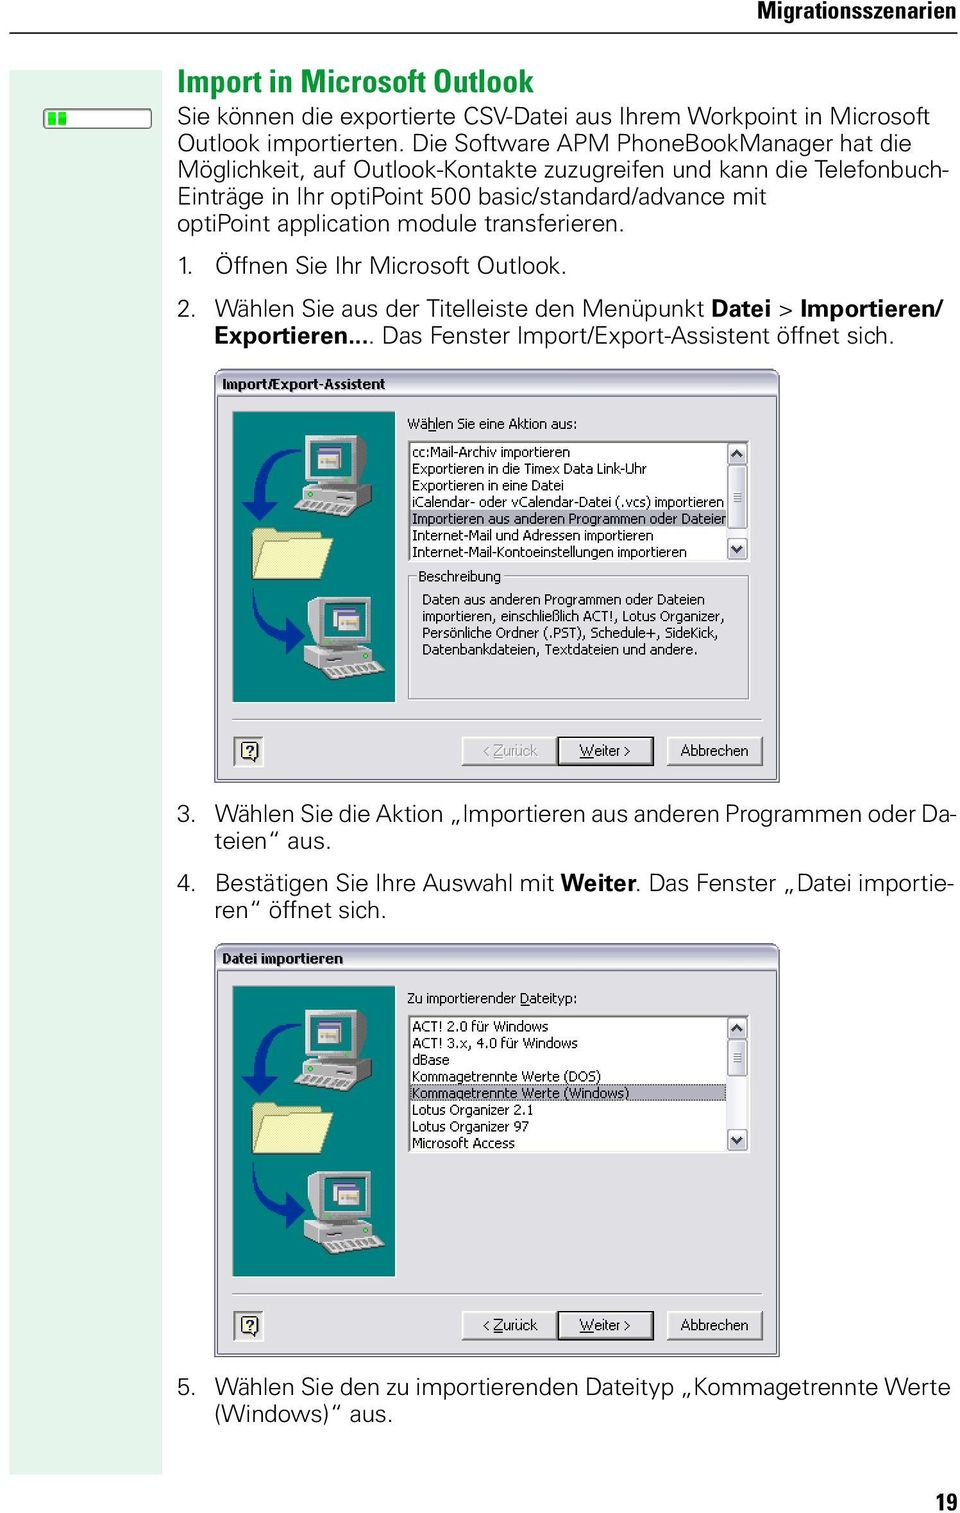 module transferieren. 1. Öffnen Sie Ihr Microsoft Outlook. 2. Wählen Sie aus der Titelleiste den Menüpunkt Datei > Importieren/ Exportieren... Das Fenster Import/Export-Assistent öffnet sich.